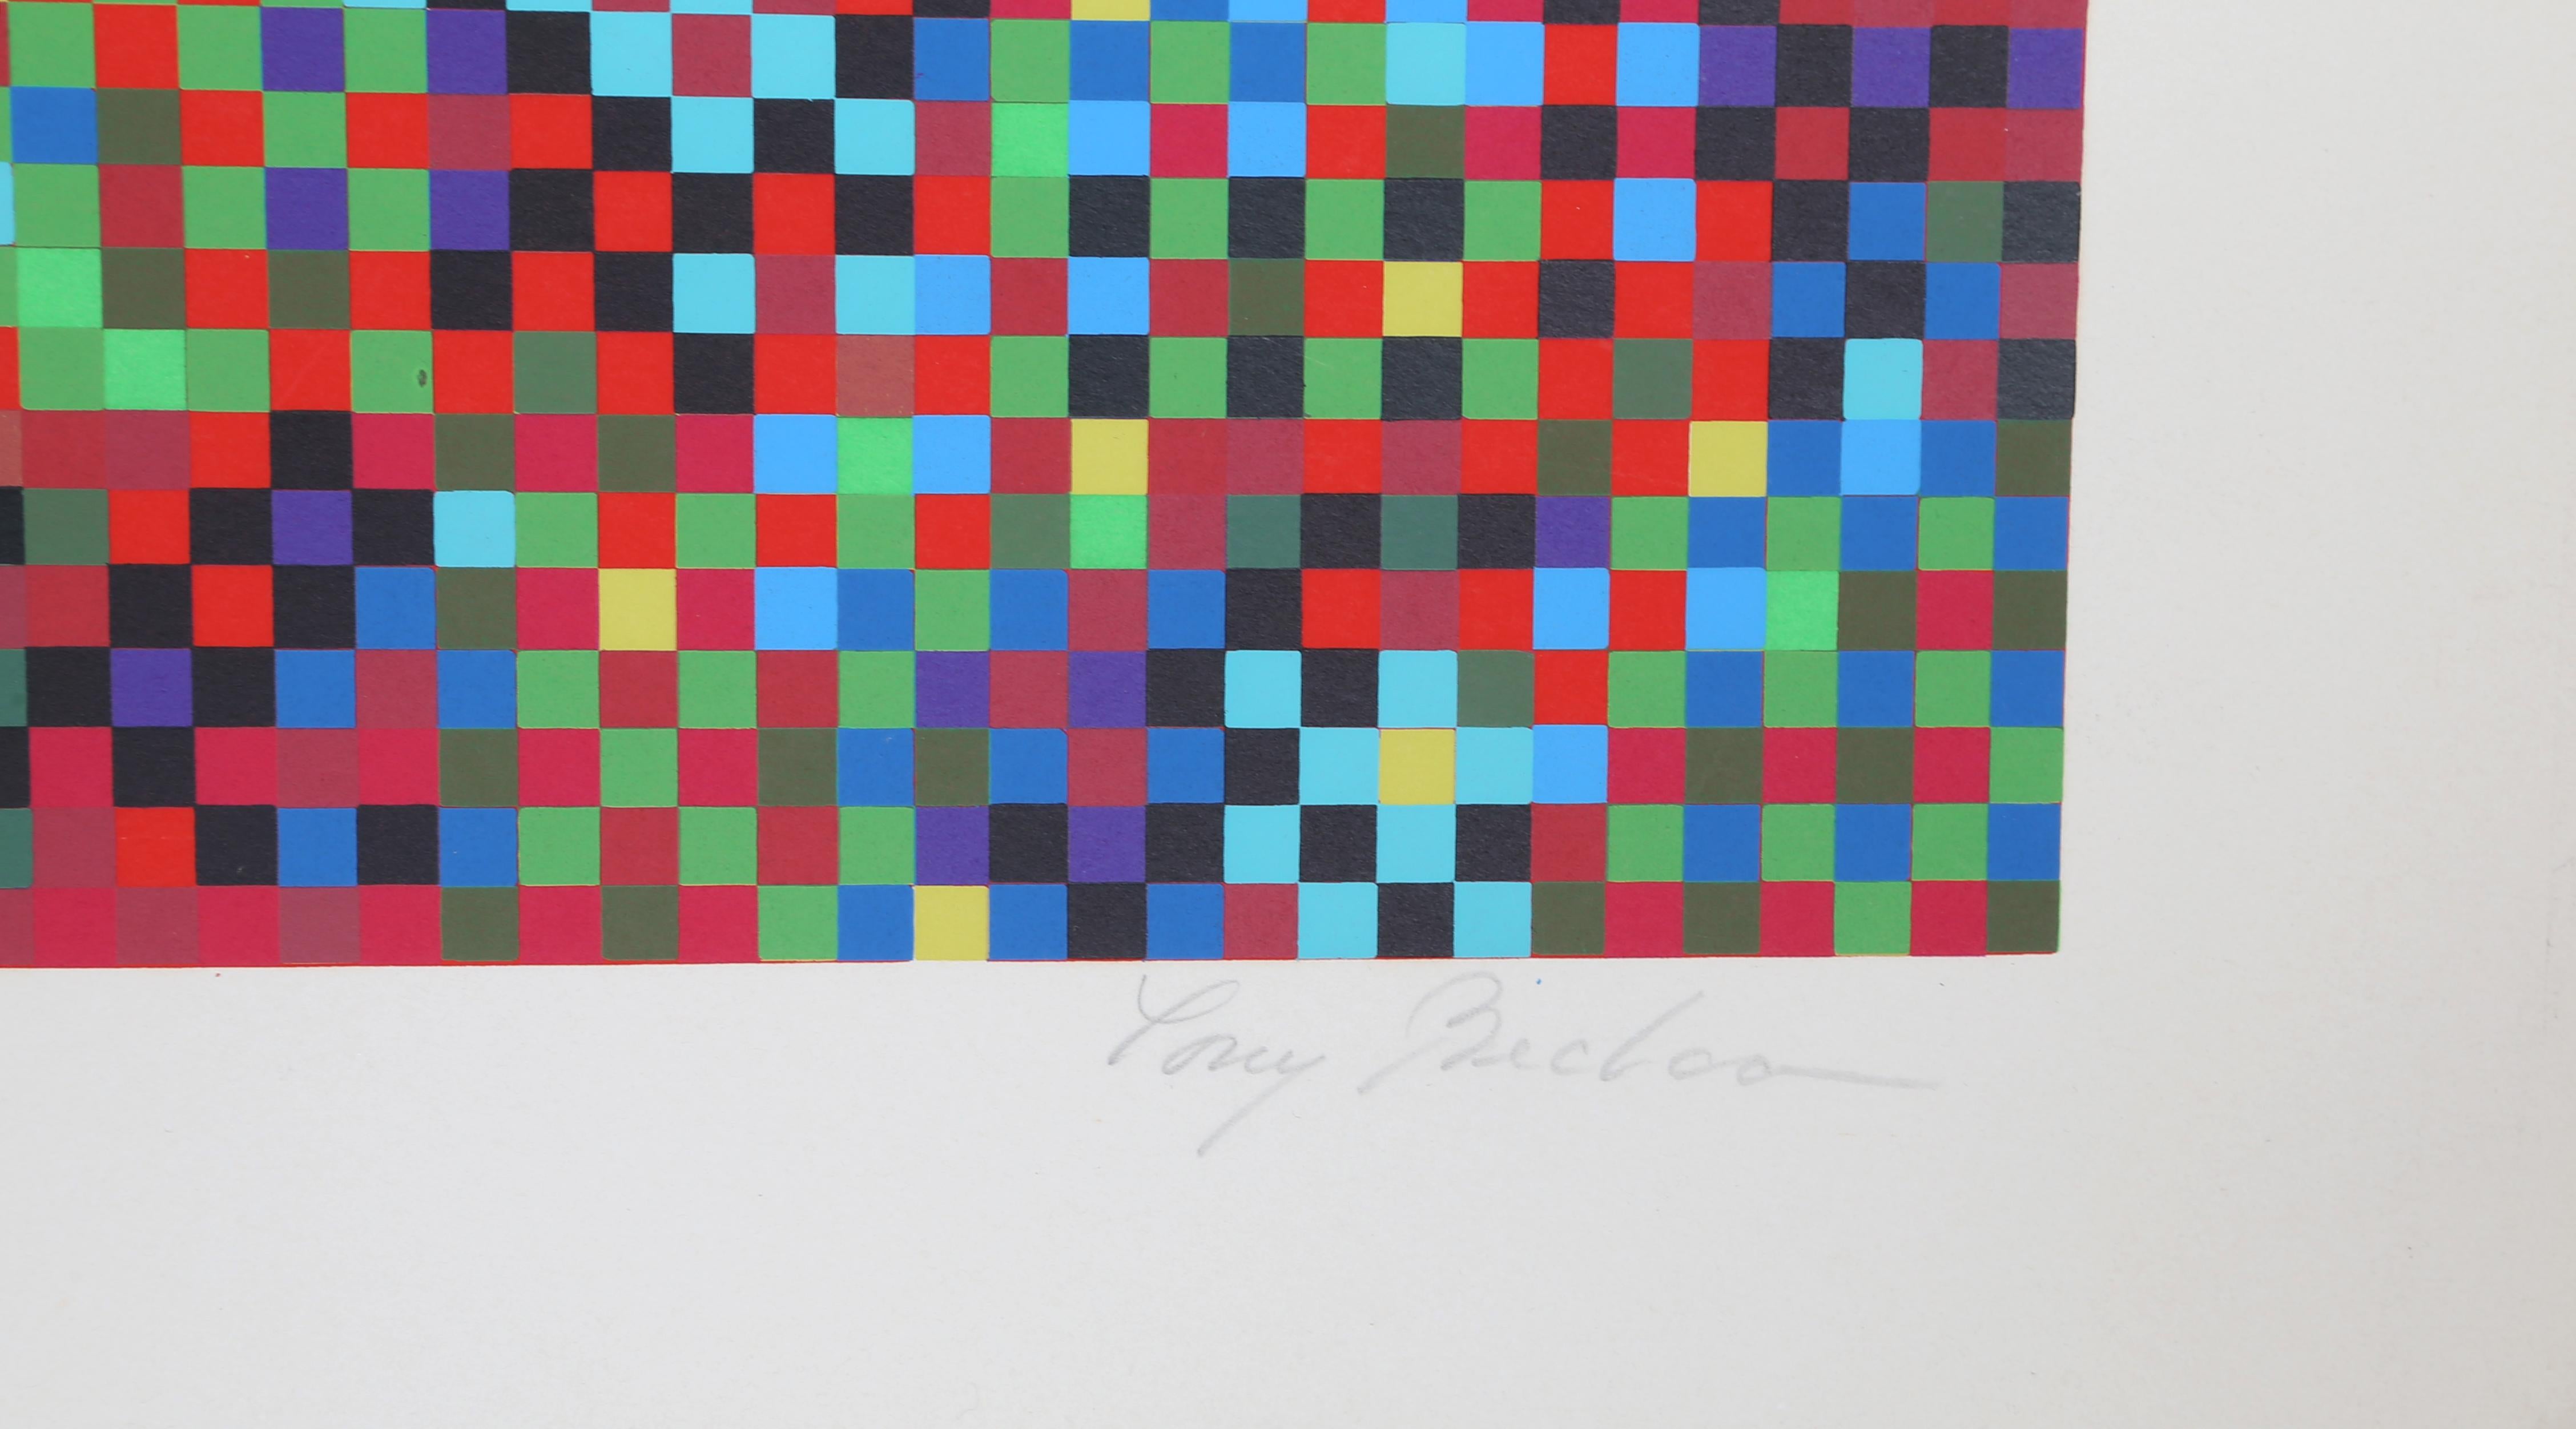 La composition abstraite de Tony Bechara en rouge, bleu et vert aborde la question de la visibilité et de la représentation dans l'art. Abstrait et flou, ce rendu est emblématique de ses œuvres qui s'appuient souvent sur des motifs et des